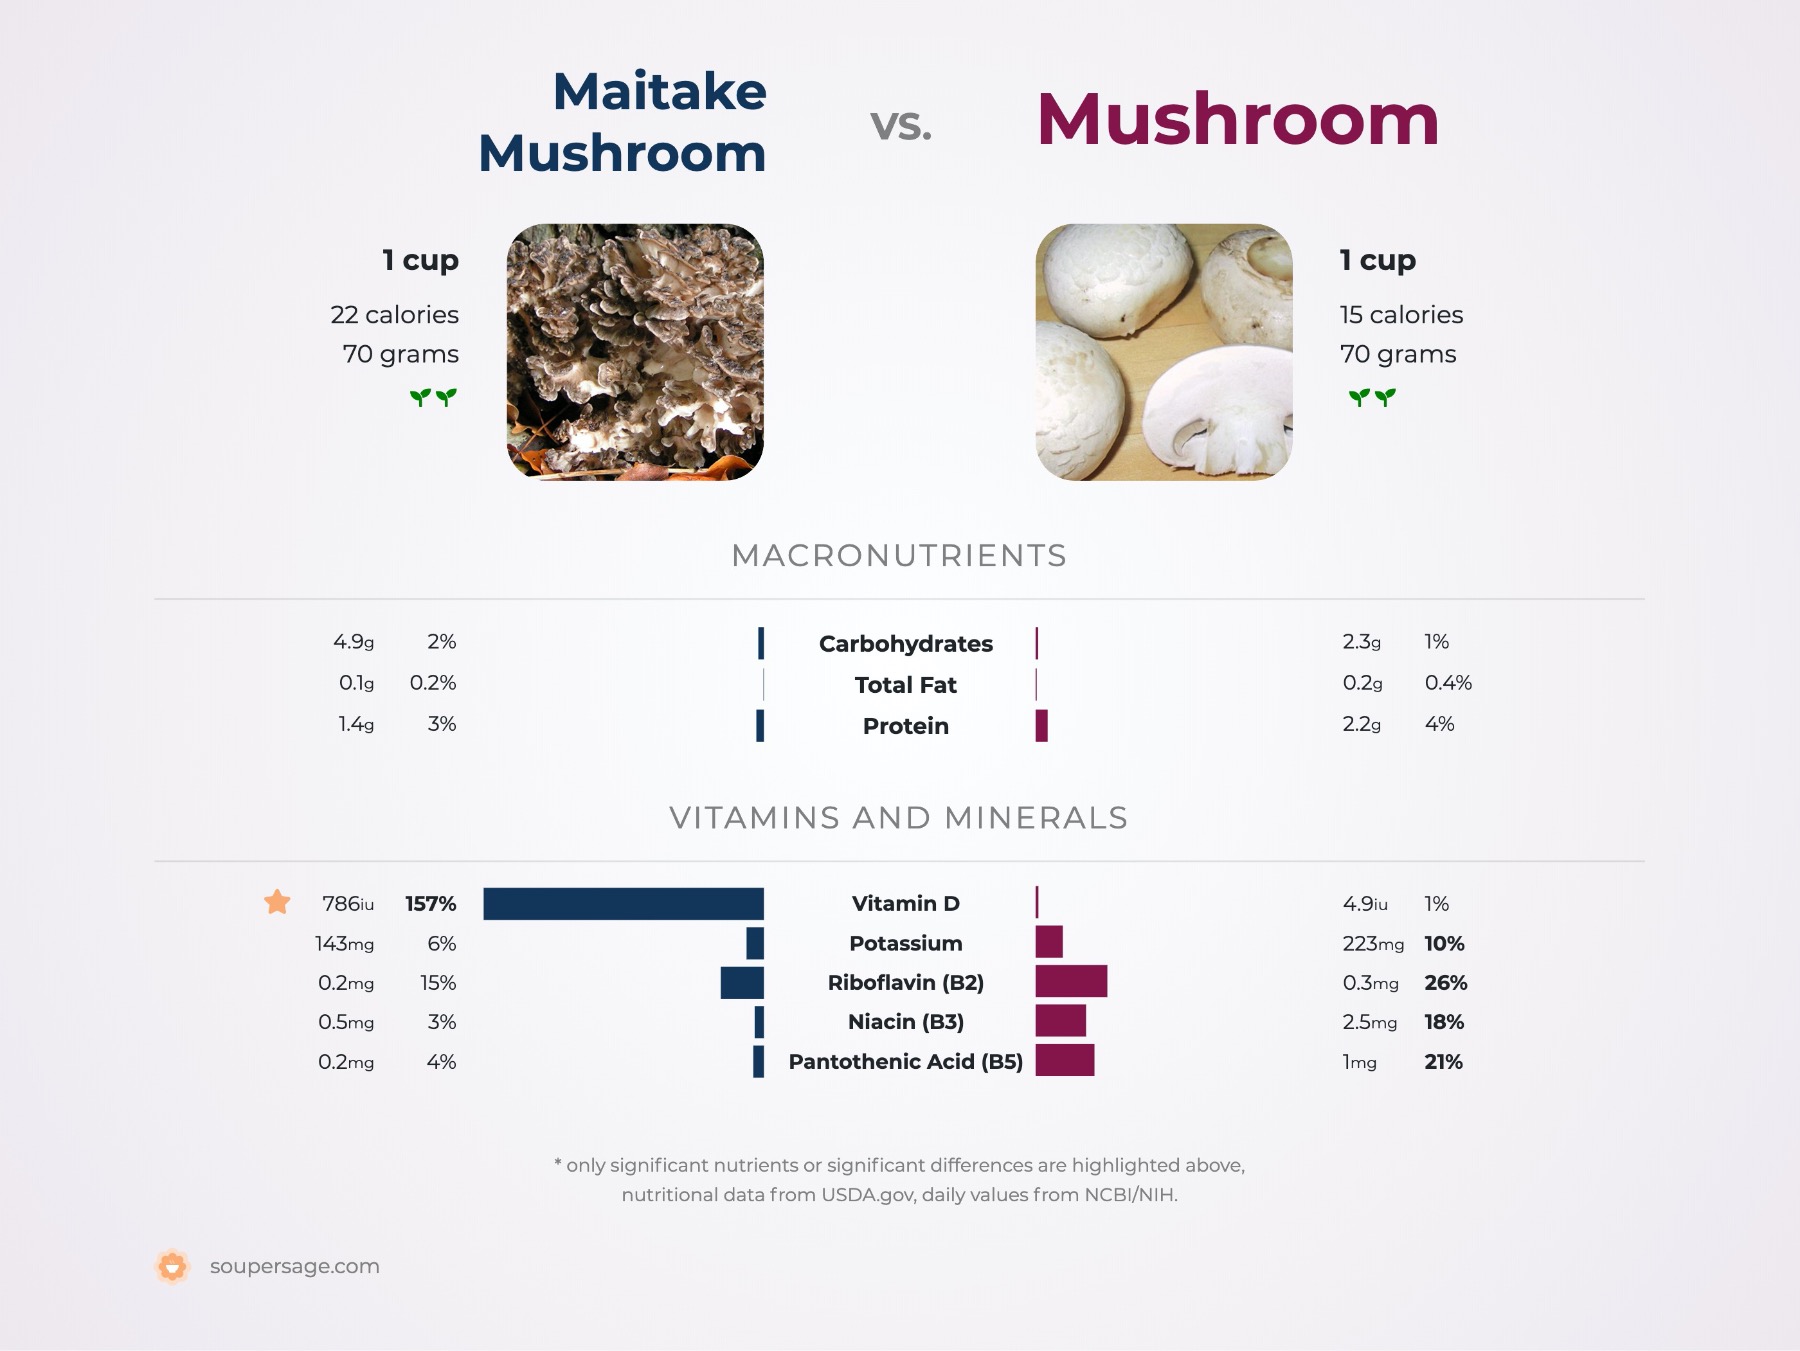 nutrition comparison of maitake mushroom vs. mushroom